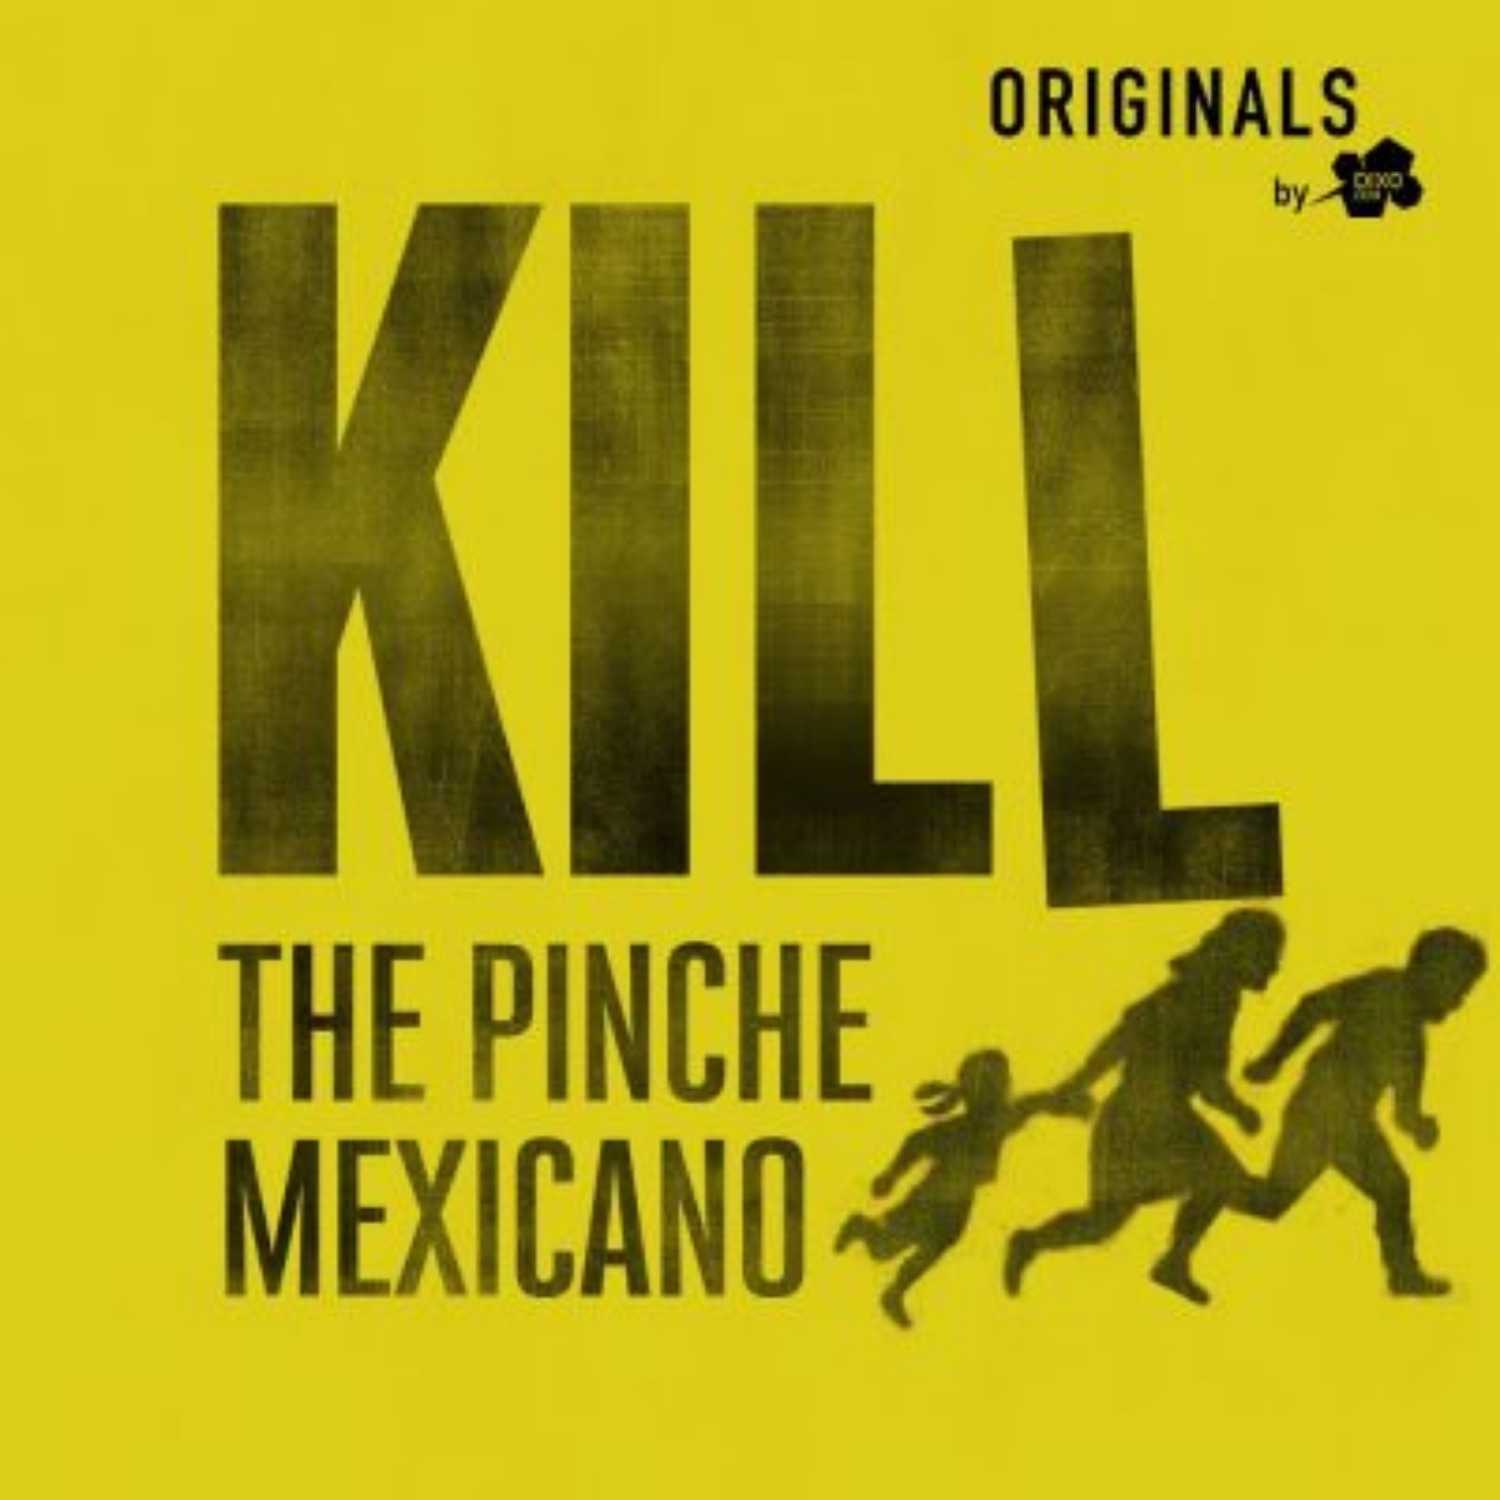 Podcast de DixoOriginals Kill the pinche mexicano